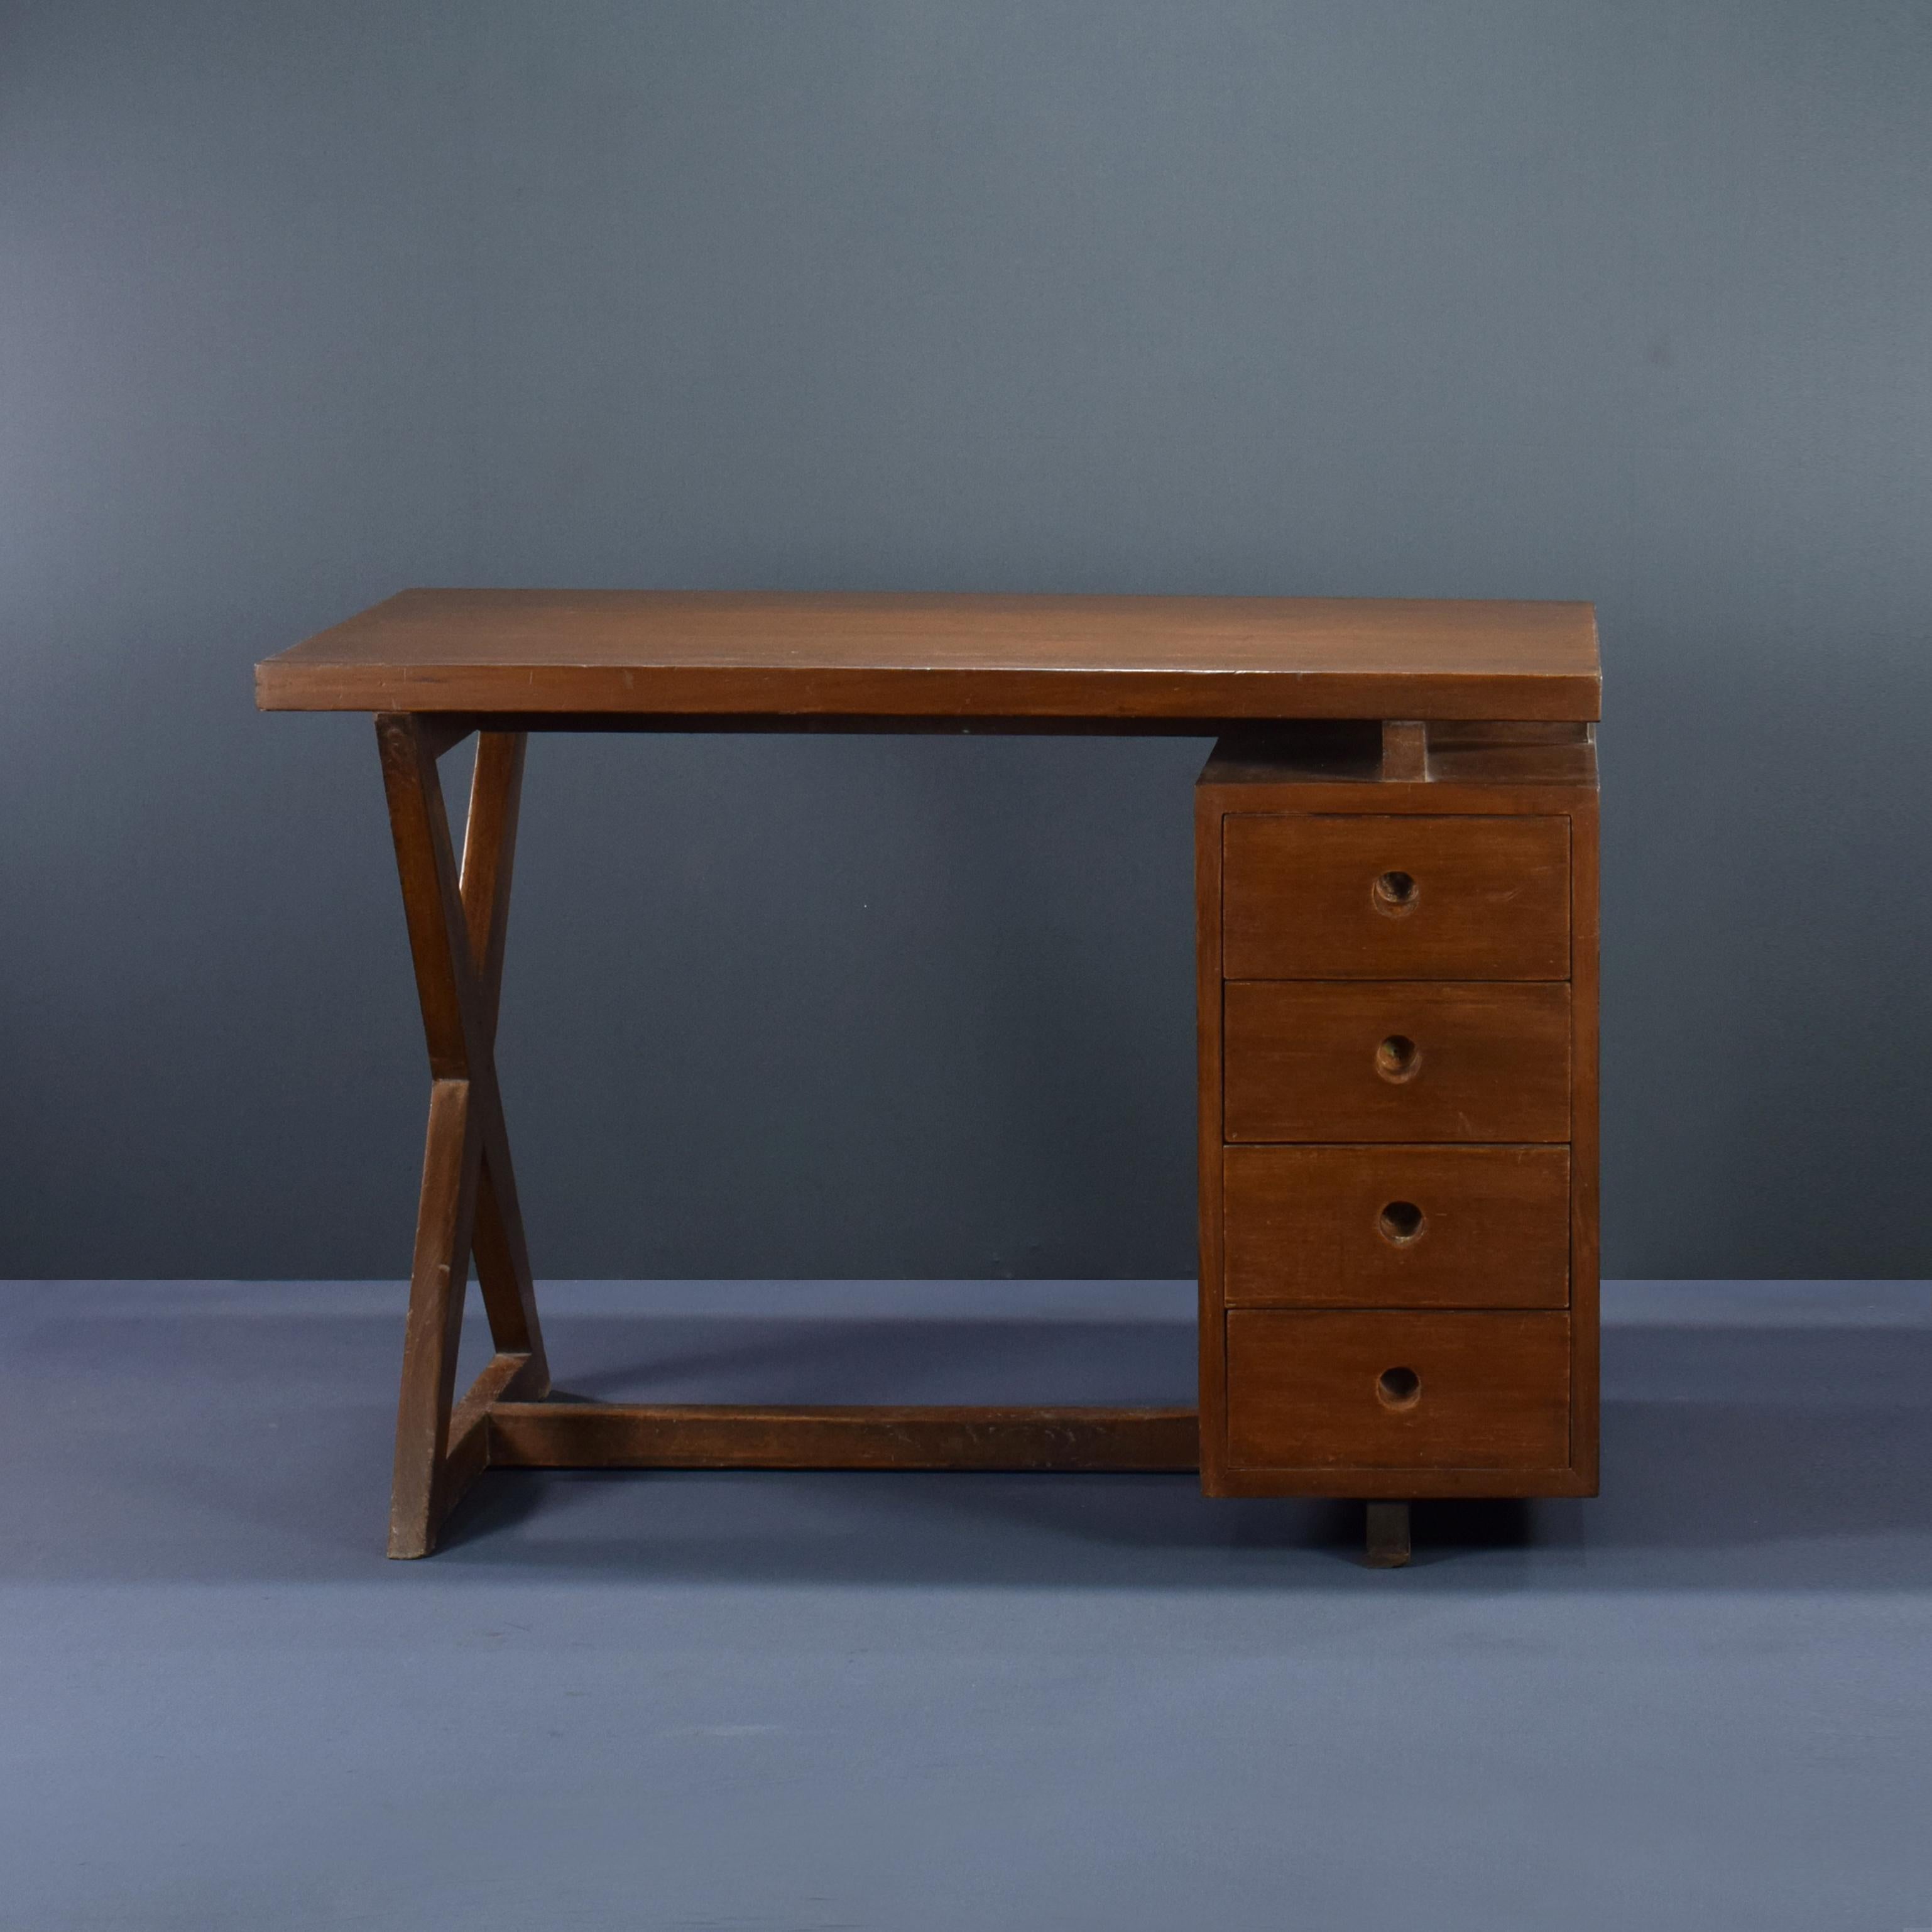 Dieser Schreibtisch ist in seiner Schlichtheit roh und verkörpert die reinen Ideen von Pierre Jeanneret. Es ist ein sehr starkes Stück, das ich sehr liebe, es ist auf die Elemente beschränkt, die es braucht: Schubladen, Platte und ein X-Fuß, um die